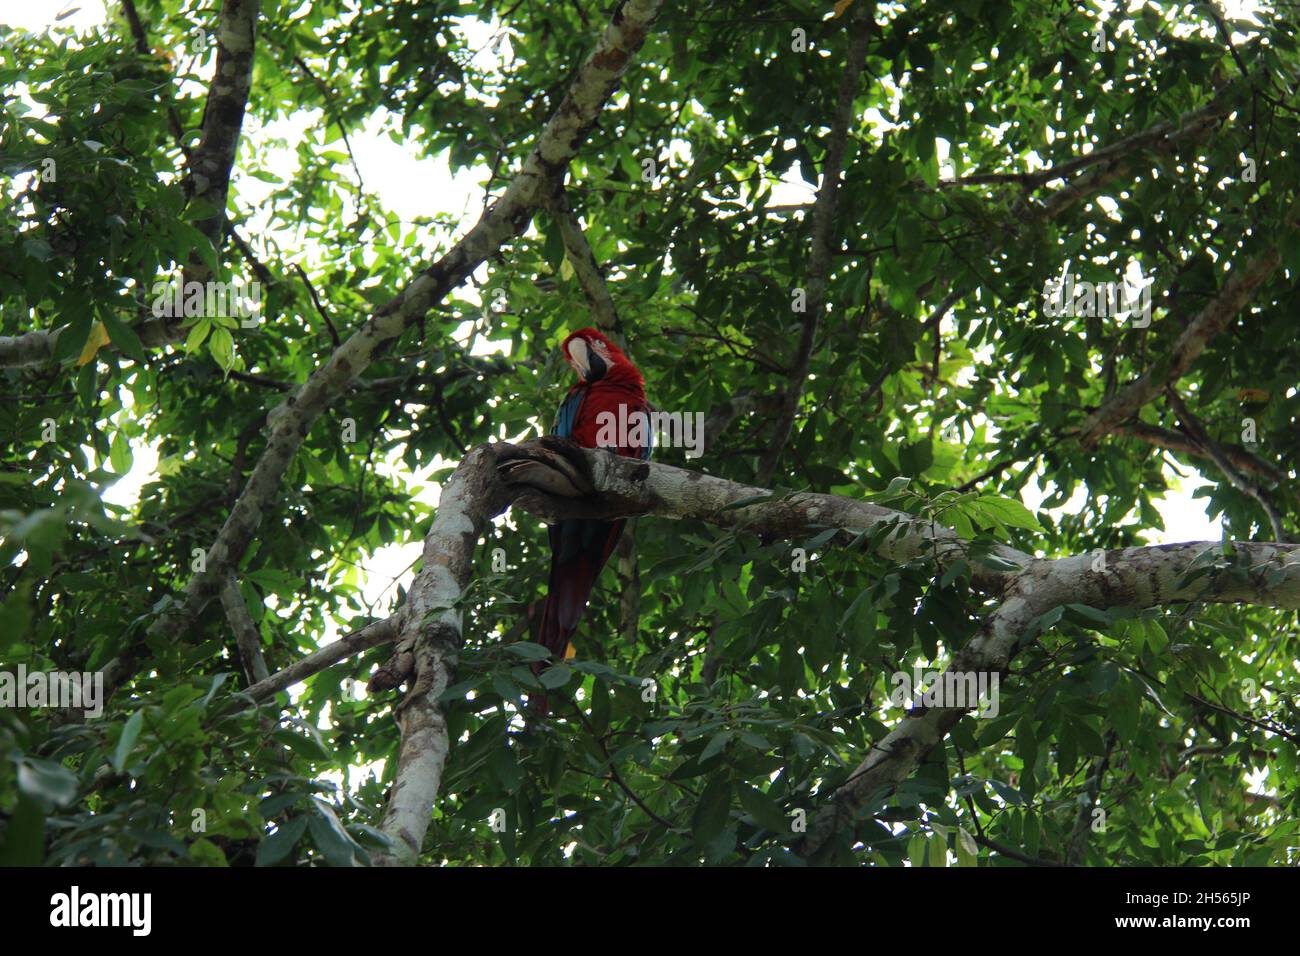 Roter Papagei auf einem Baumstamm, mit verschwommenem Hintergrund in Bonito - Mato Grosso do Sul - Brasilien. Stockfoto